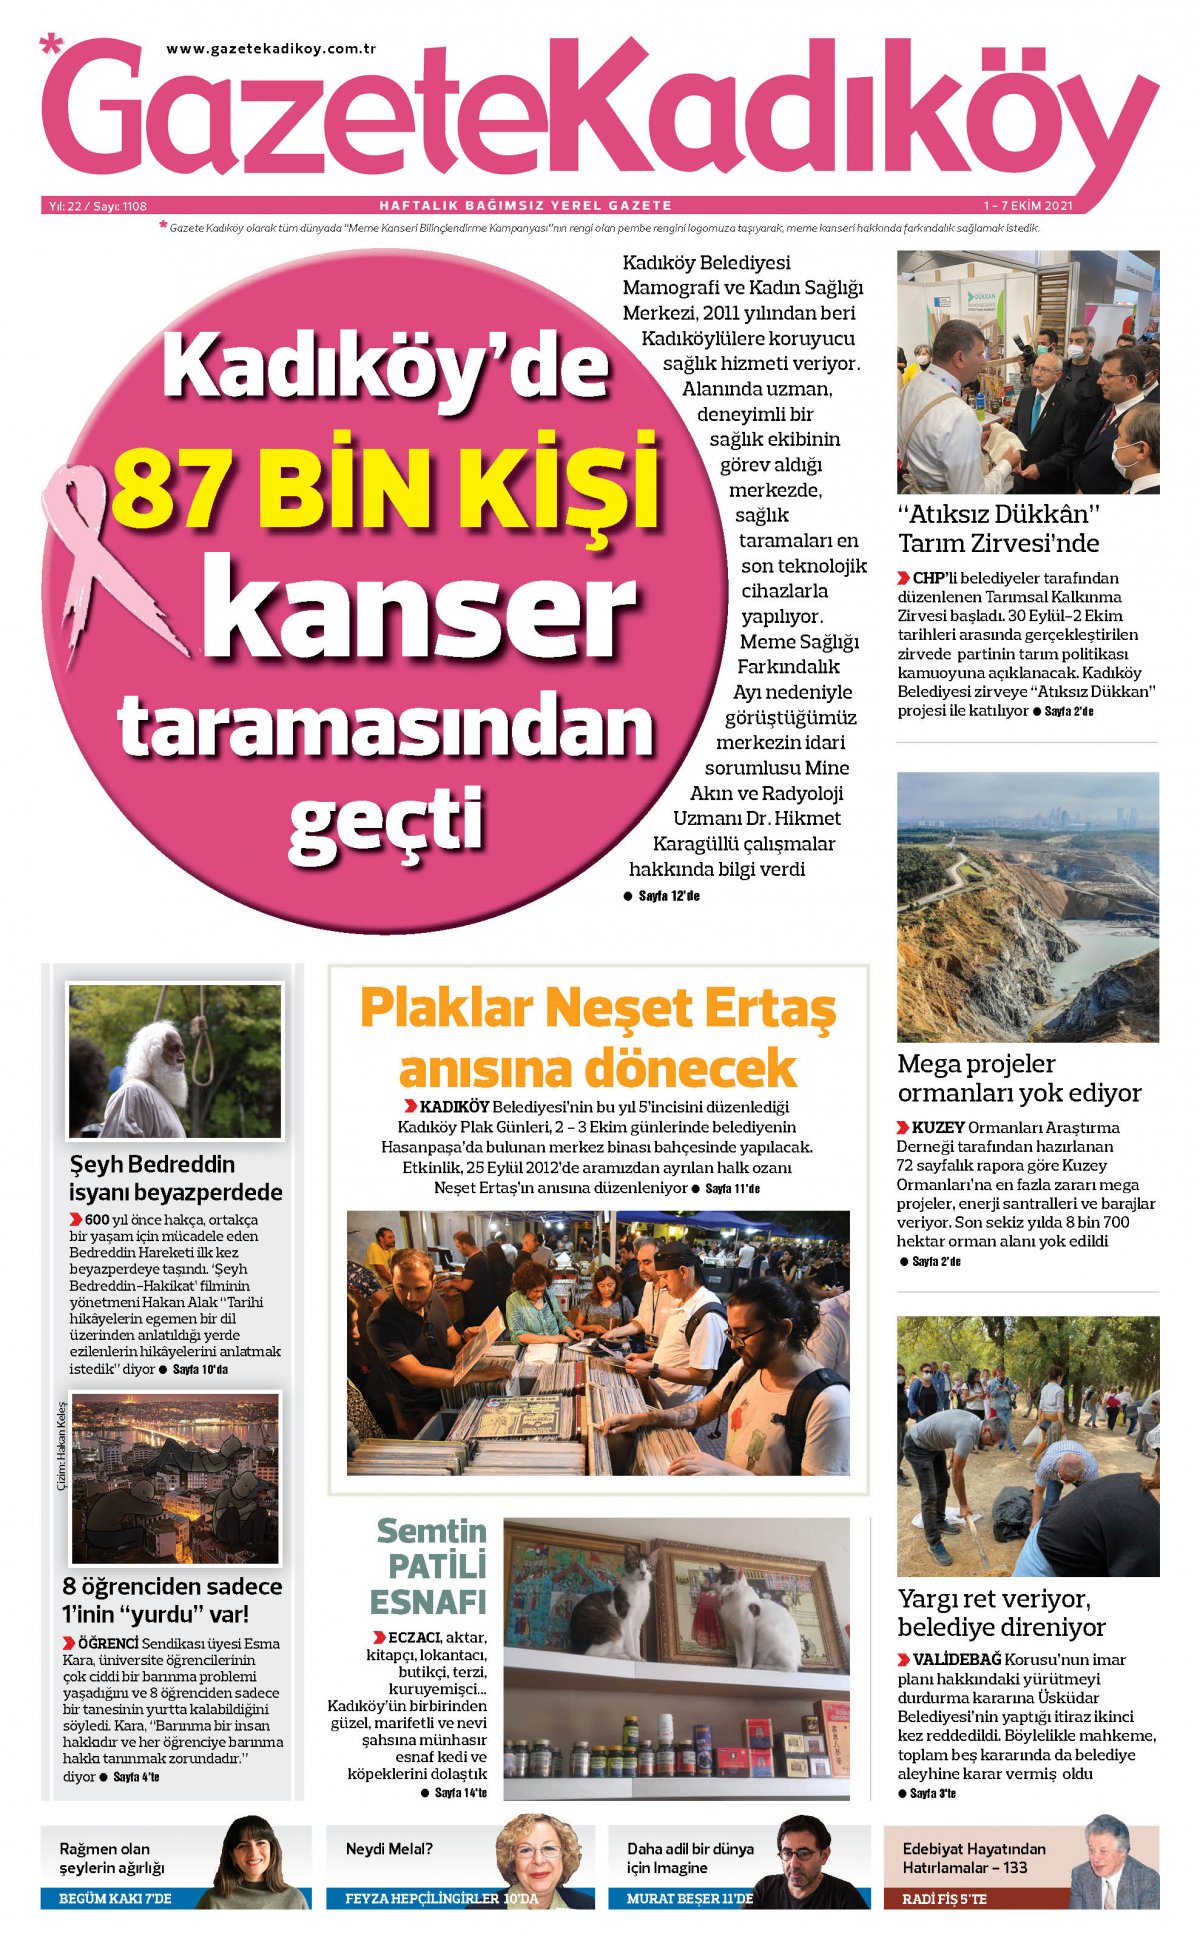 Gazete Kadıköy - 1108. Sayı